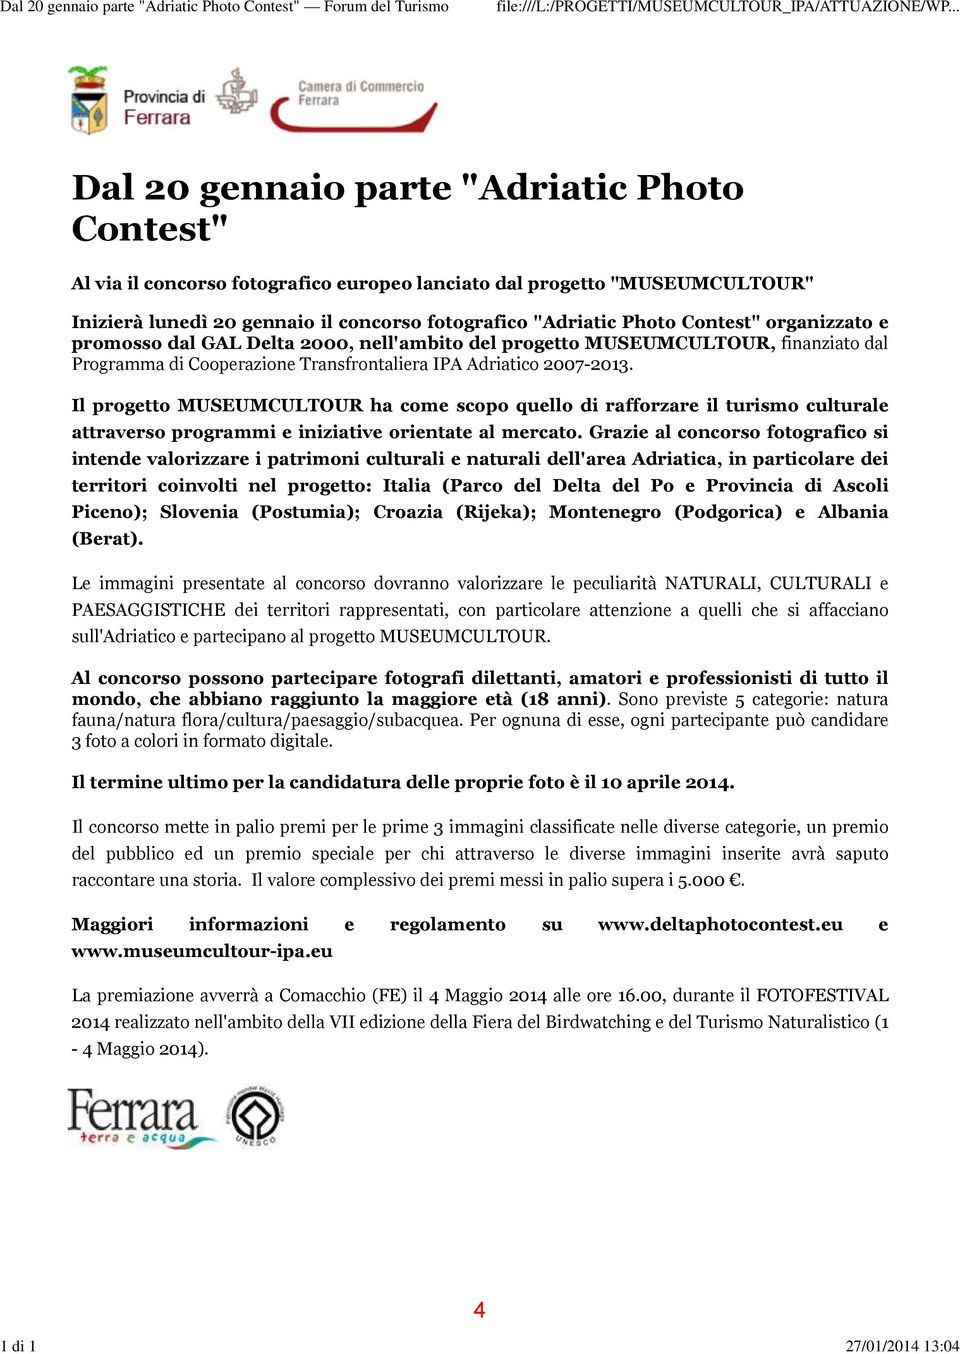 fotografico "Adriatic Photo Contest" organizzato e promosso dal GAL Delta 2000, nell'ambito del progetto MUSEUMCULTOUR, finanziato dal Programma di Cooperazione Transfrontaliera IPA Adriatico